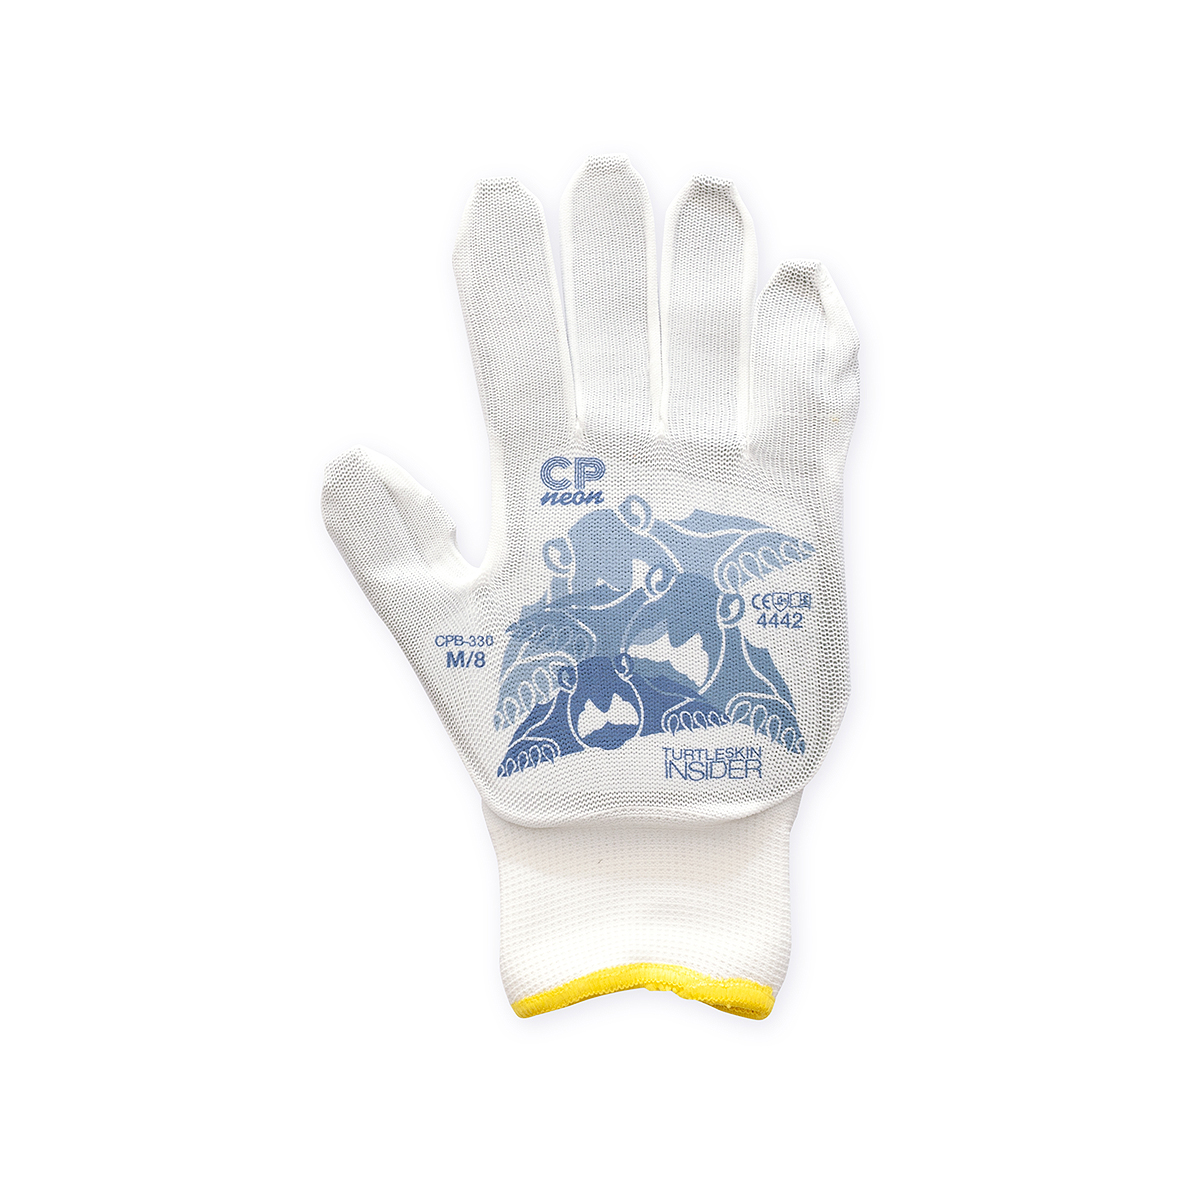 Turtleskin Gloves - Size Medium